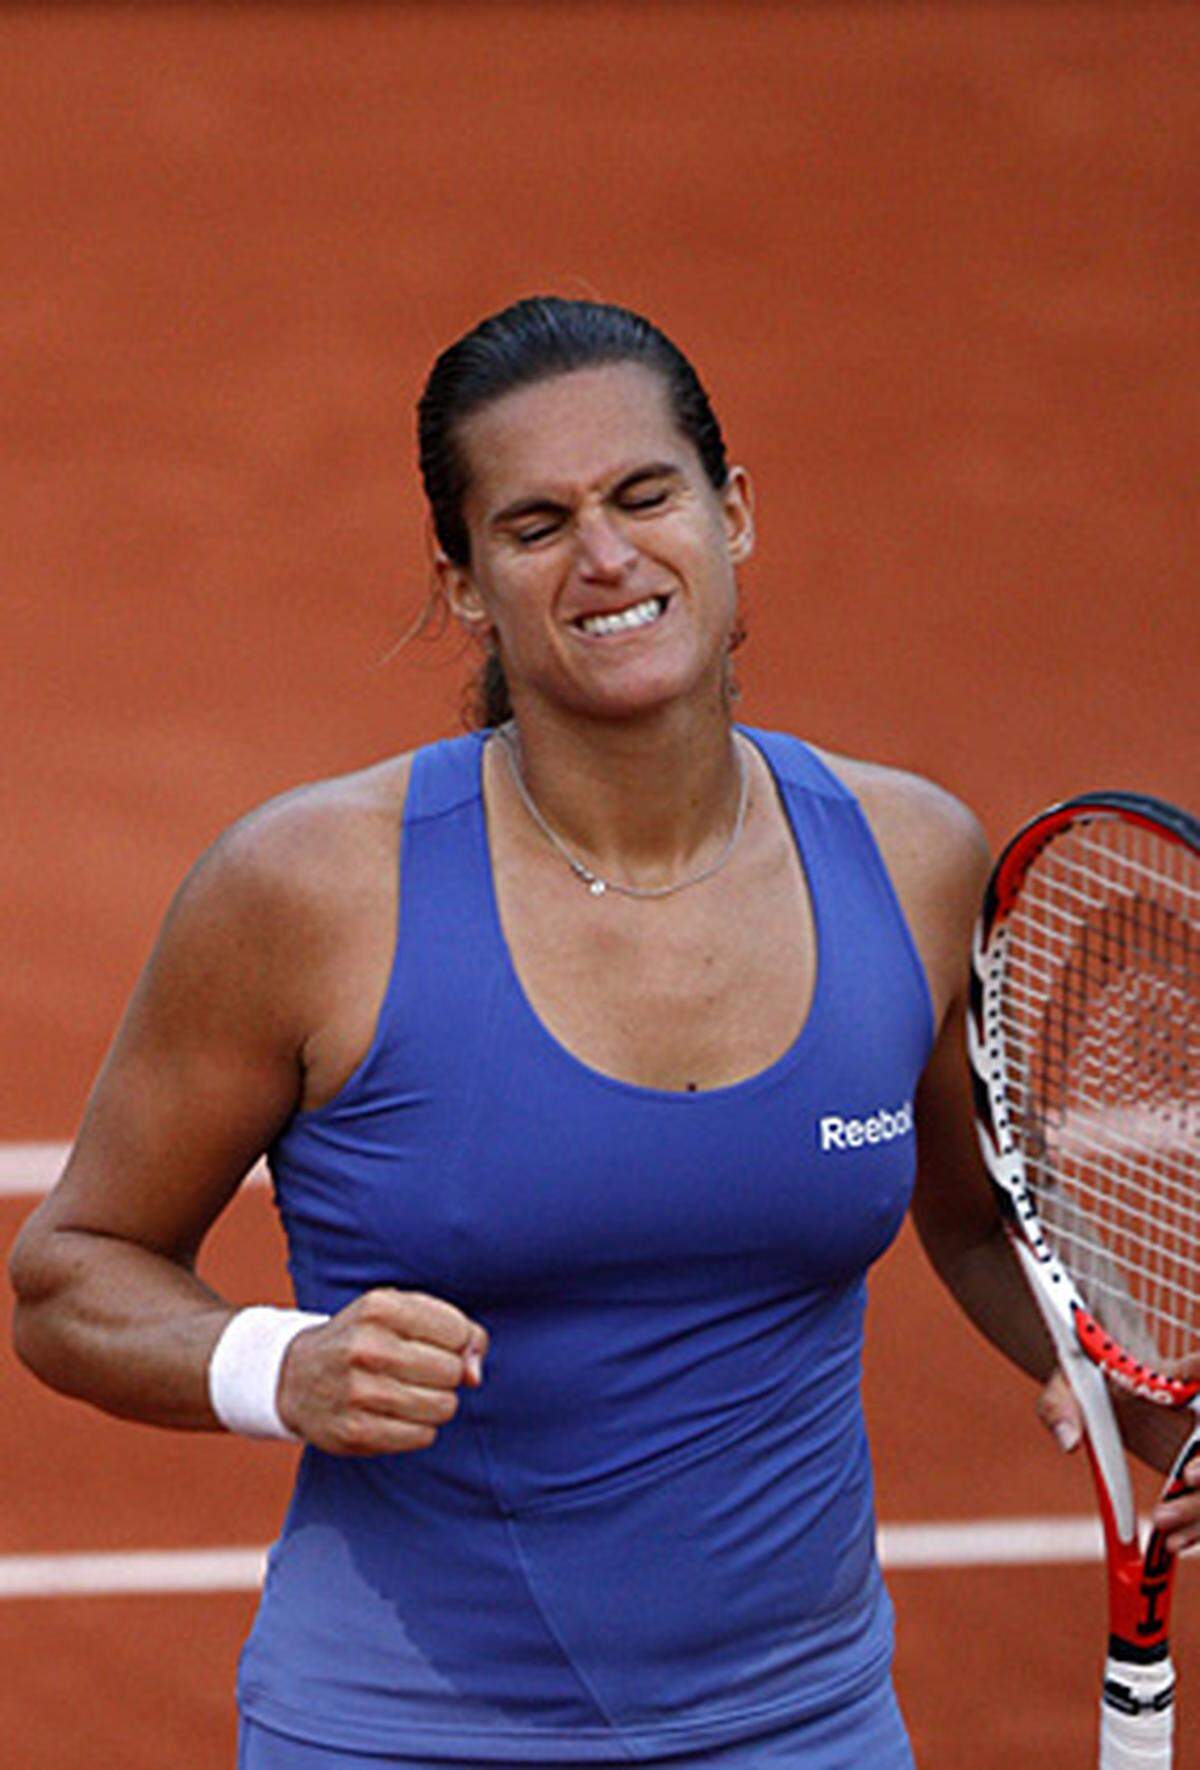 Die französische Top-Tennis-Spielerin, die auch schon Nummer eins der Weltrangliste war, steht schon seit 1999 offen zu ihrer lesbischen Orientierung. Nach dem Halbfinal-Einzug bei den Australian Open wandte sie sich damals mit ihrem Outing an die Presse.